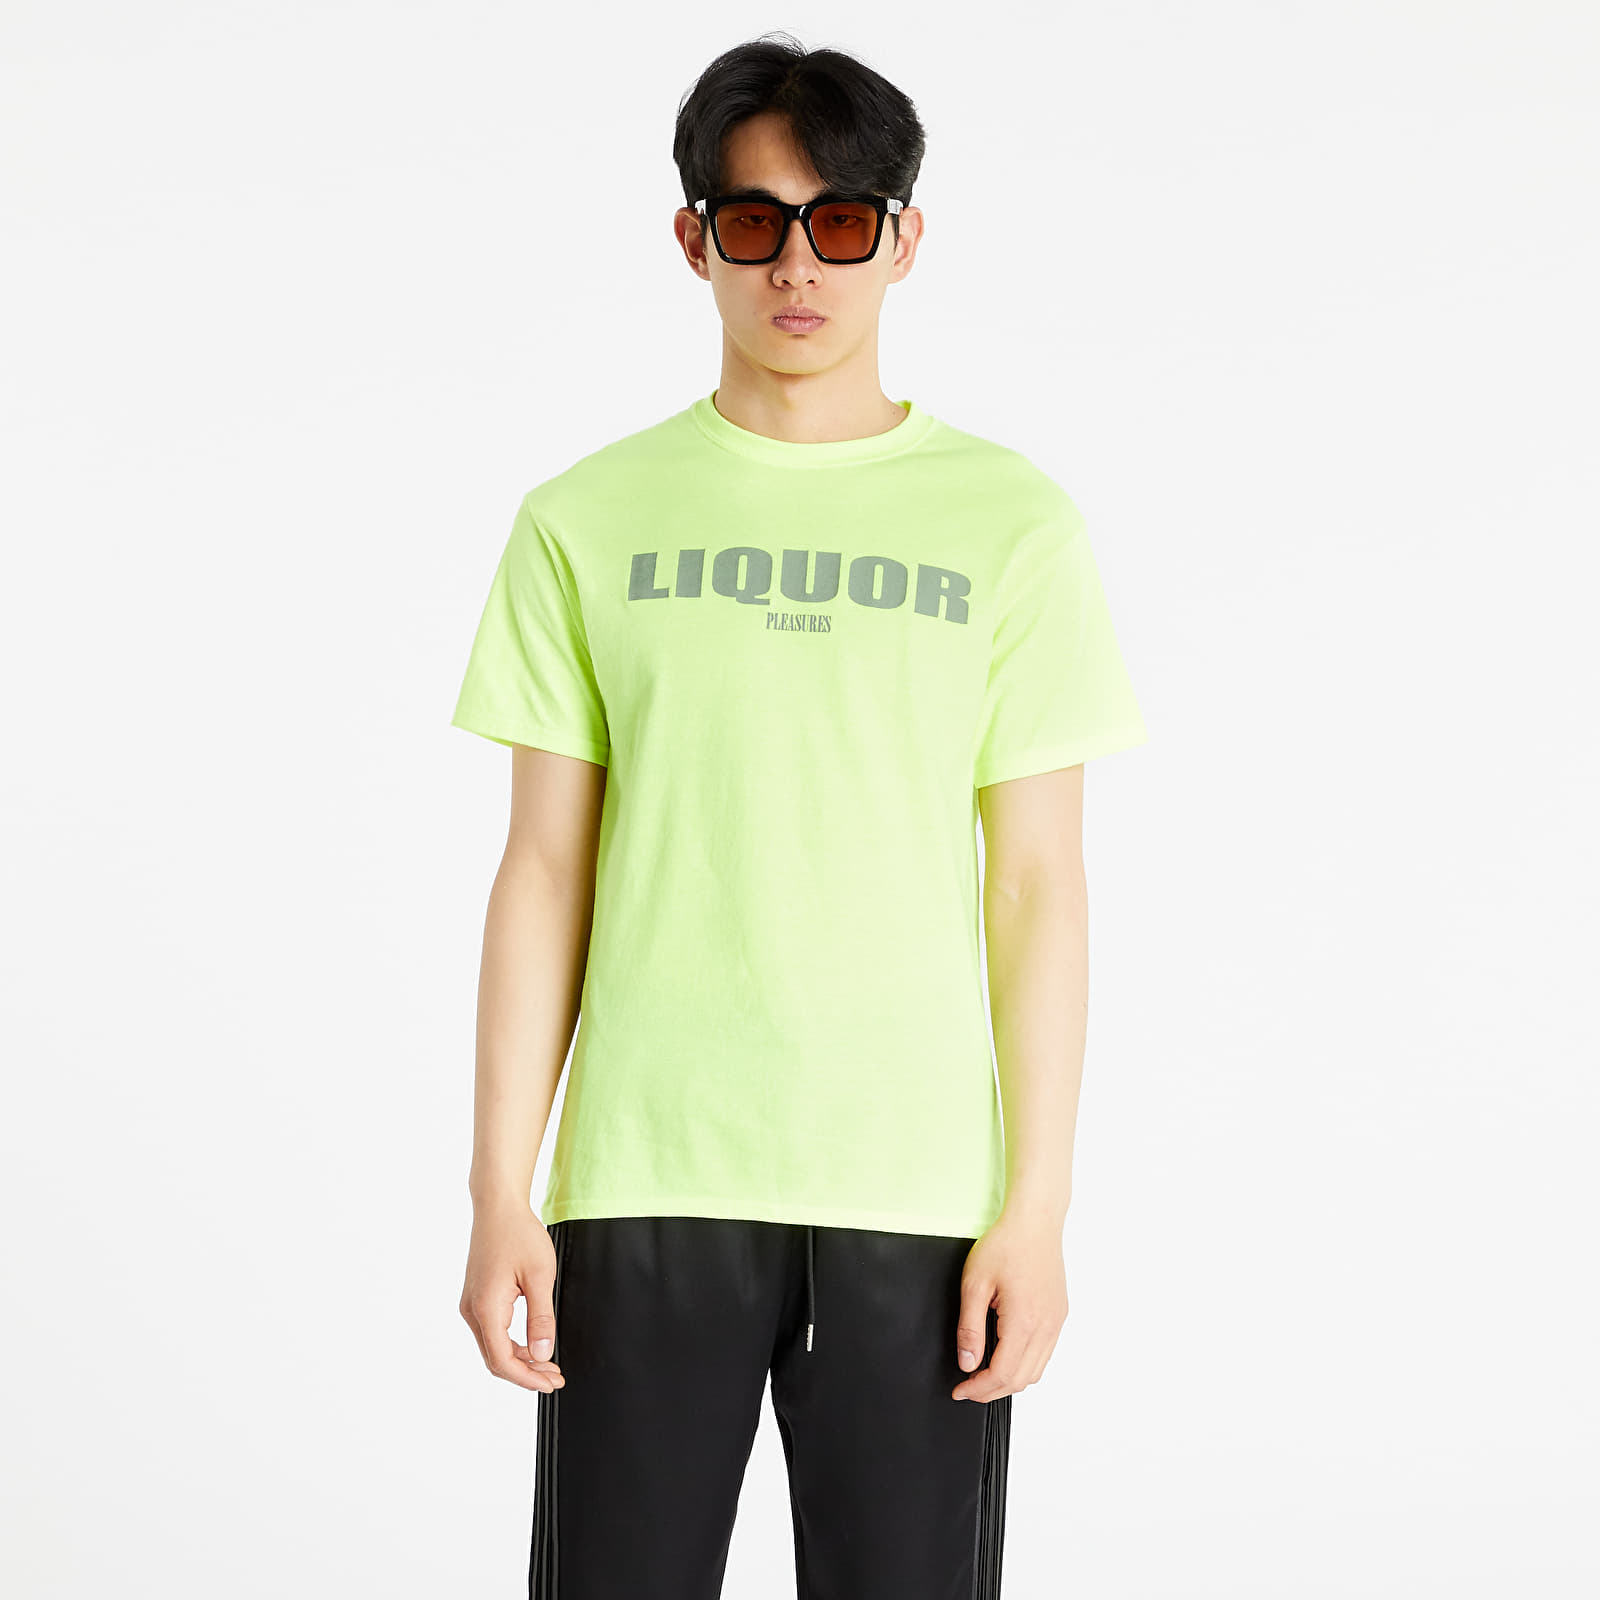 PLEASURES - liquor t-shirt green